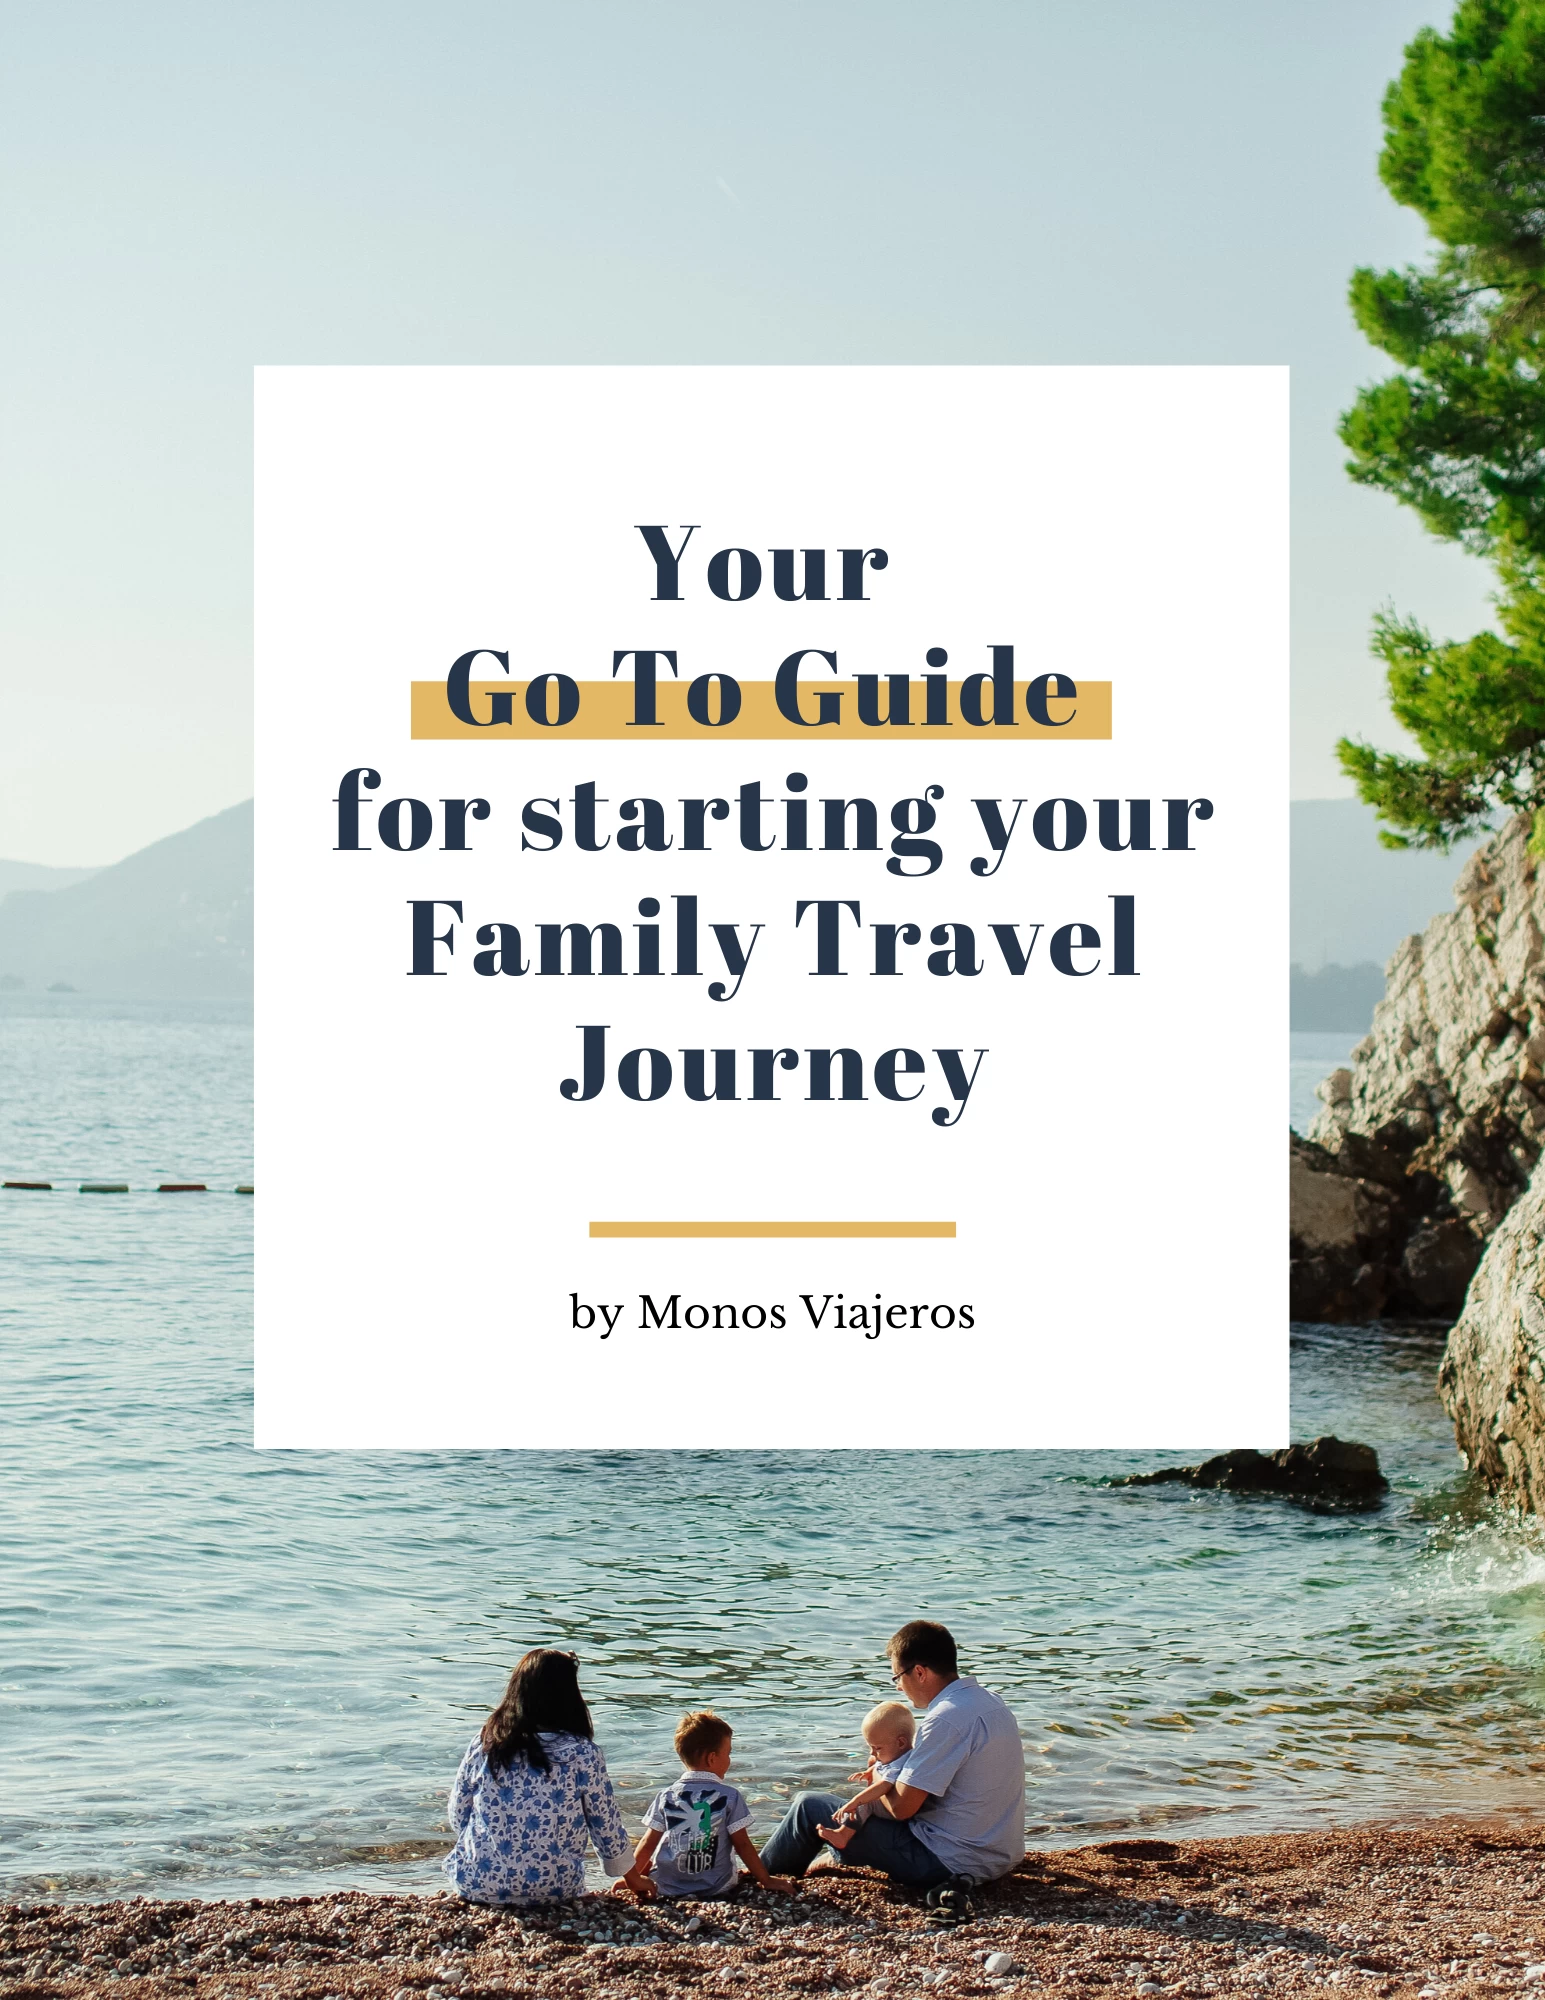 Family-Travel-Journey